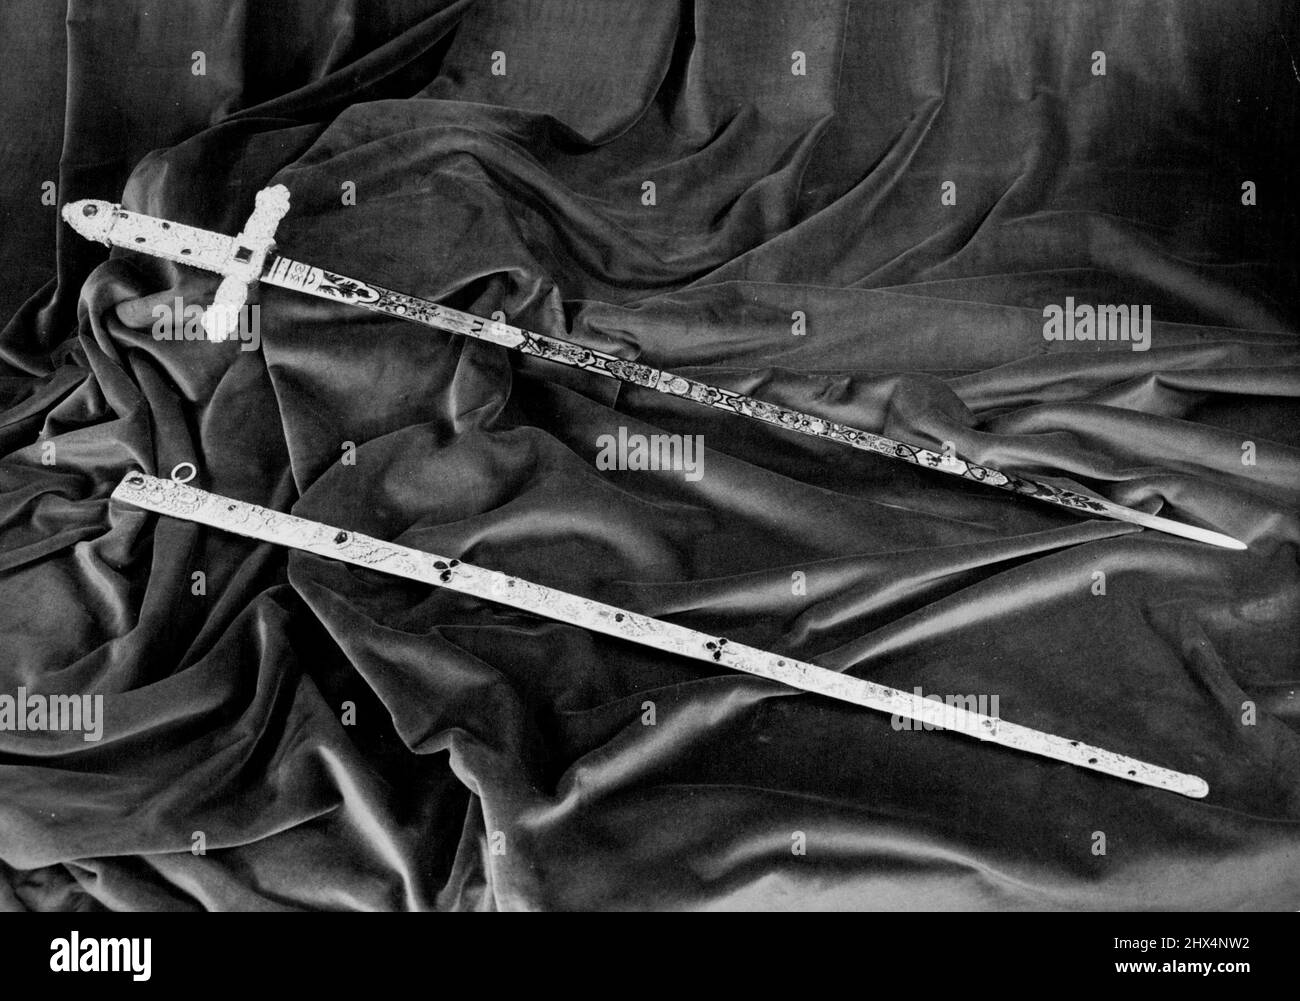 La spada di Stato Jeweled -- la spada Jeweled è la spada più bella e preziosa del mondo, fatta di acciaio Damasco. Il suo scabbardo, costellato di zaffiri, rubini, diamanti e altre pietre preziose. Fu fatta per l'Incoronazione di Giorgio IV ed è la spada che il Sovrano all'Incoronazione consegna all'Arcivescovo di Canterbury, simboleggiando che la spada è posta al servizio della Chiesa. Viene portato in processione all'Coronazione, quando sostituisce la spada di Stato. Dicembre 03, 1952. Foto Stock